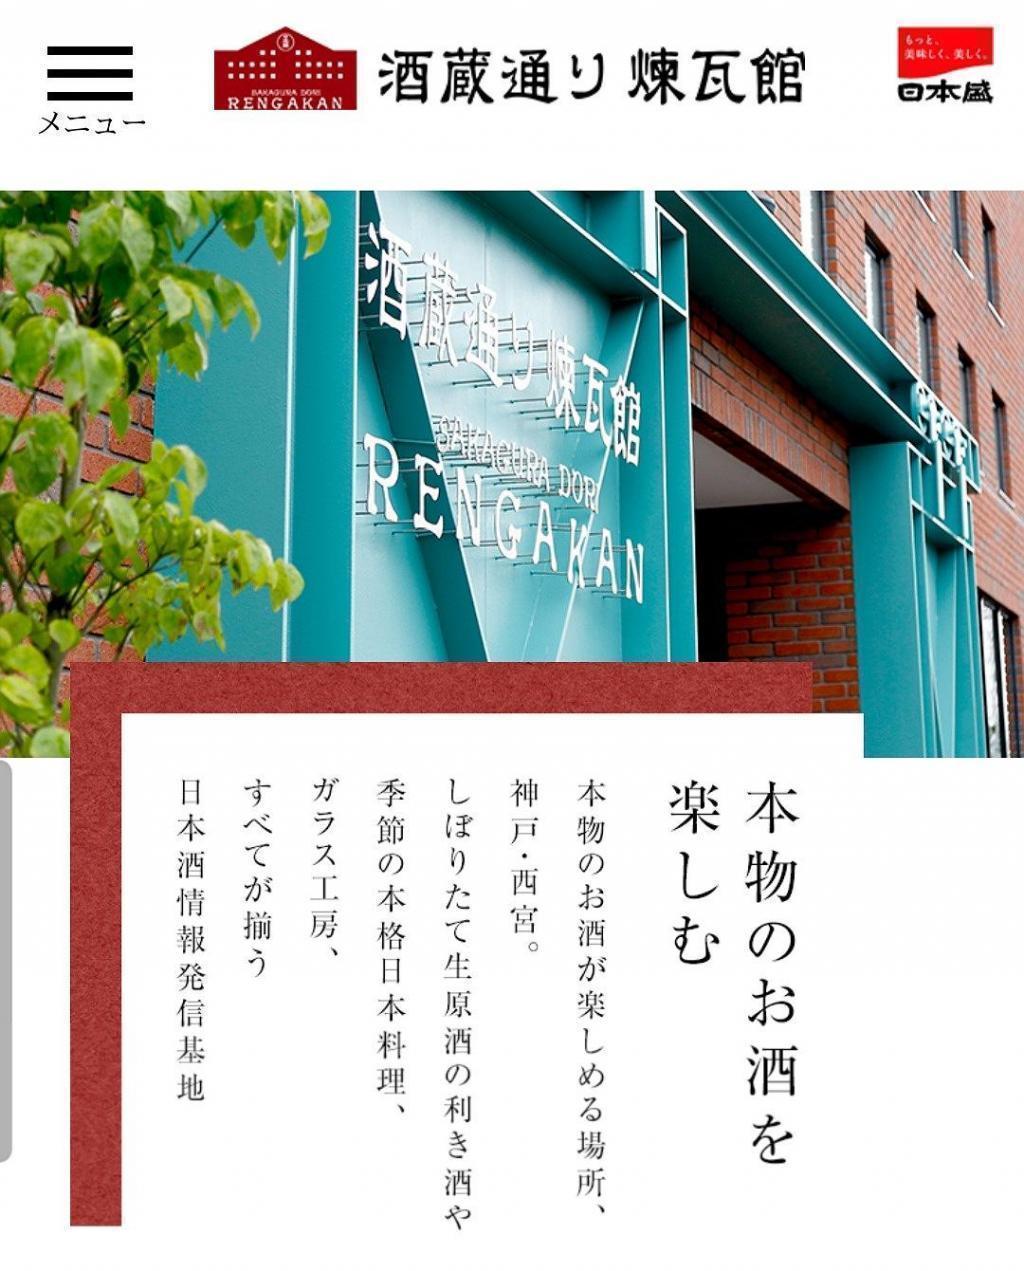 「酒蔵通り煉瓦館（さかぐらどおりれんがかん）」に行ってみたいです。 江戸下り酒文化伝承の地「新川」で店を構える「日本盛」さん、東京支店長にインタビューしました！